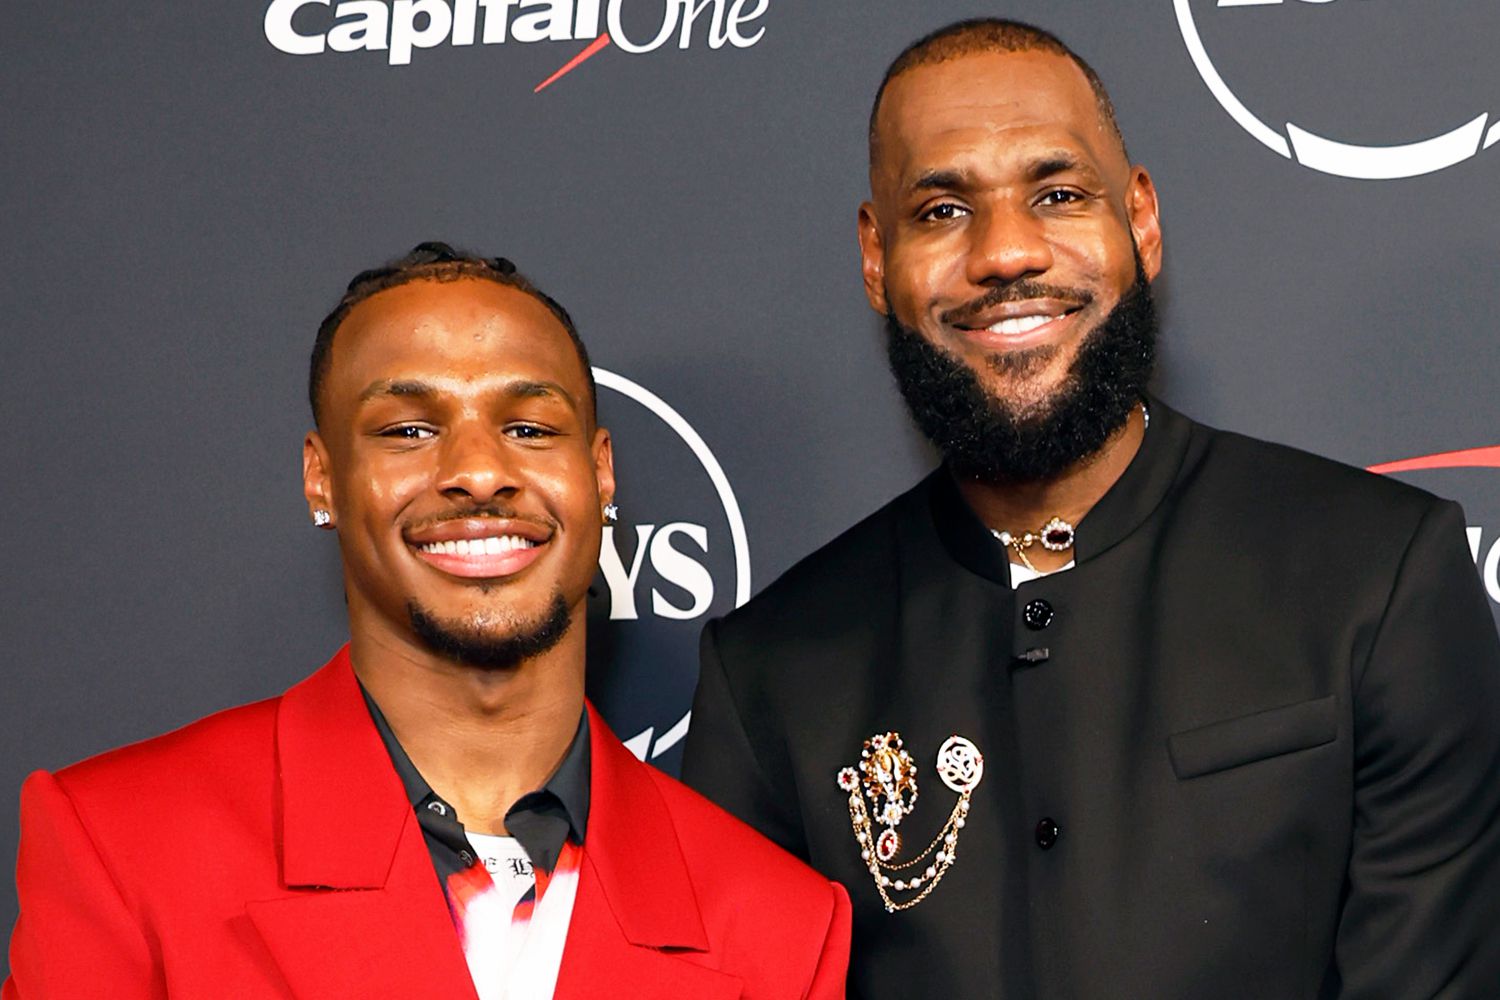 LeBron James giocherà con il figlio Bronny nei Lakers, ora è ufficiale: è la prima volta nella storia della Nba